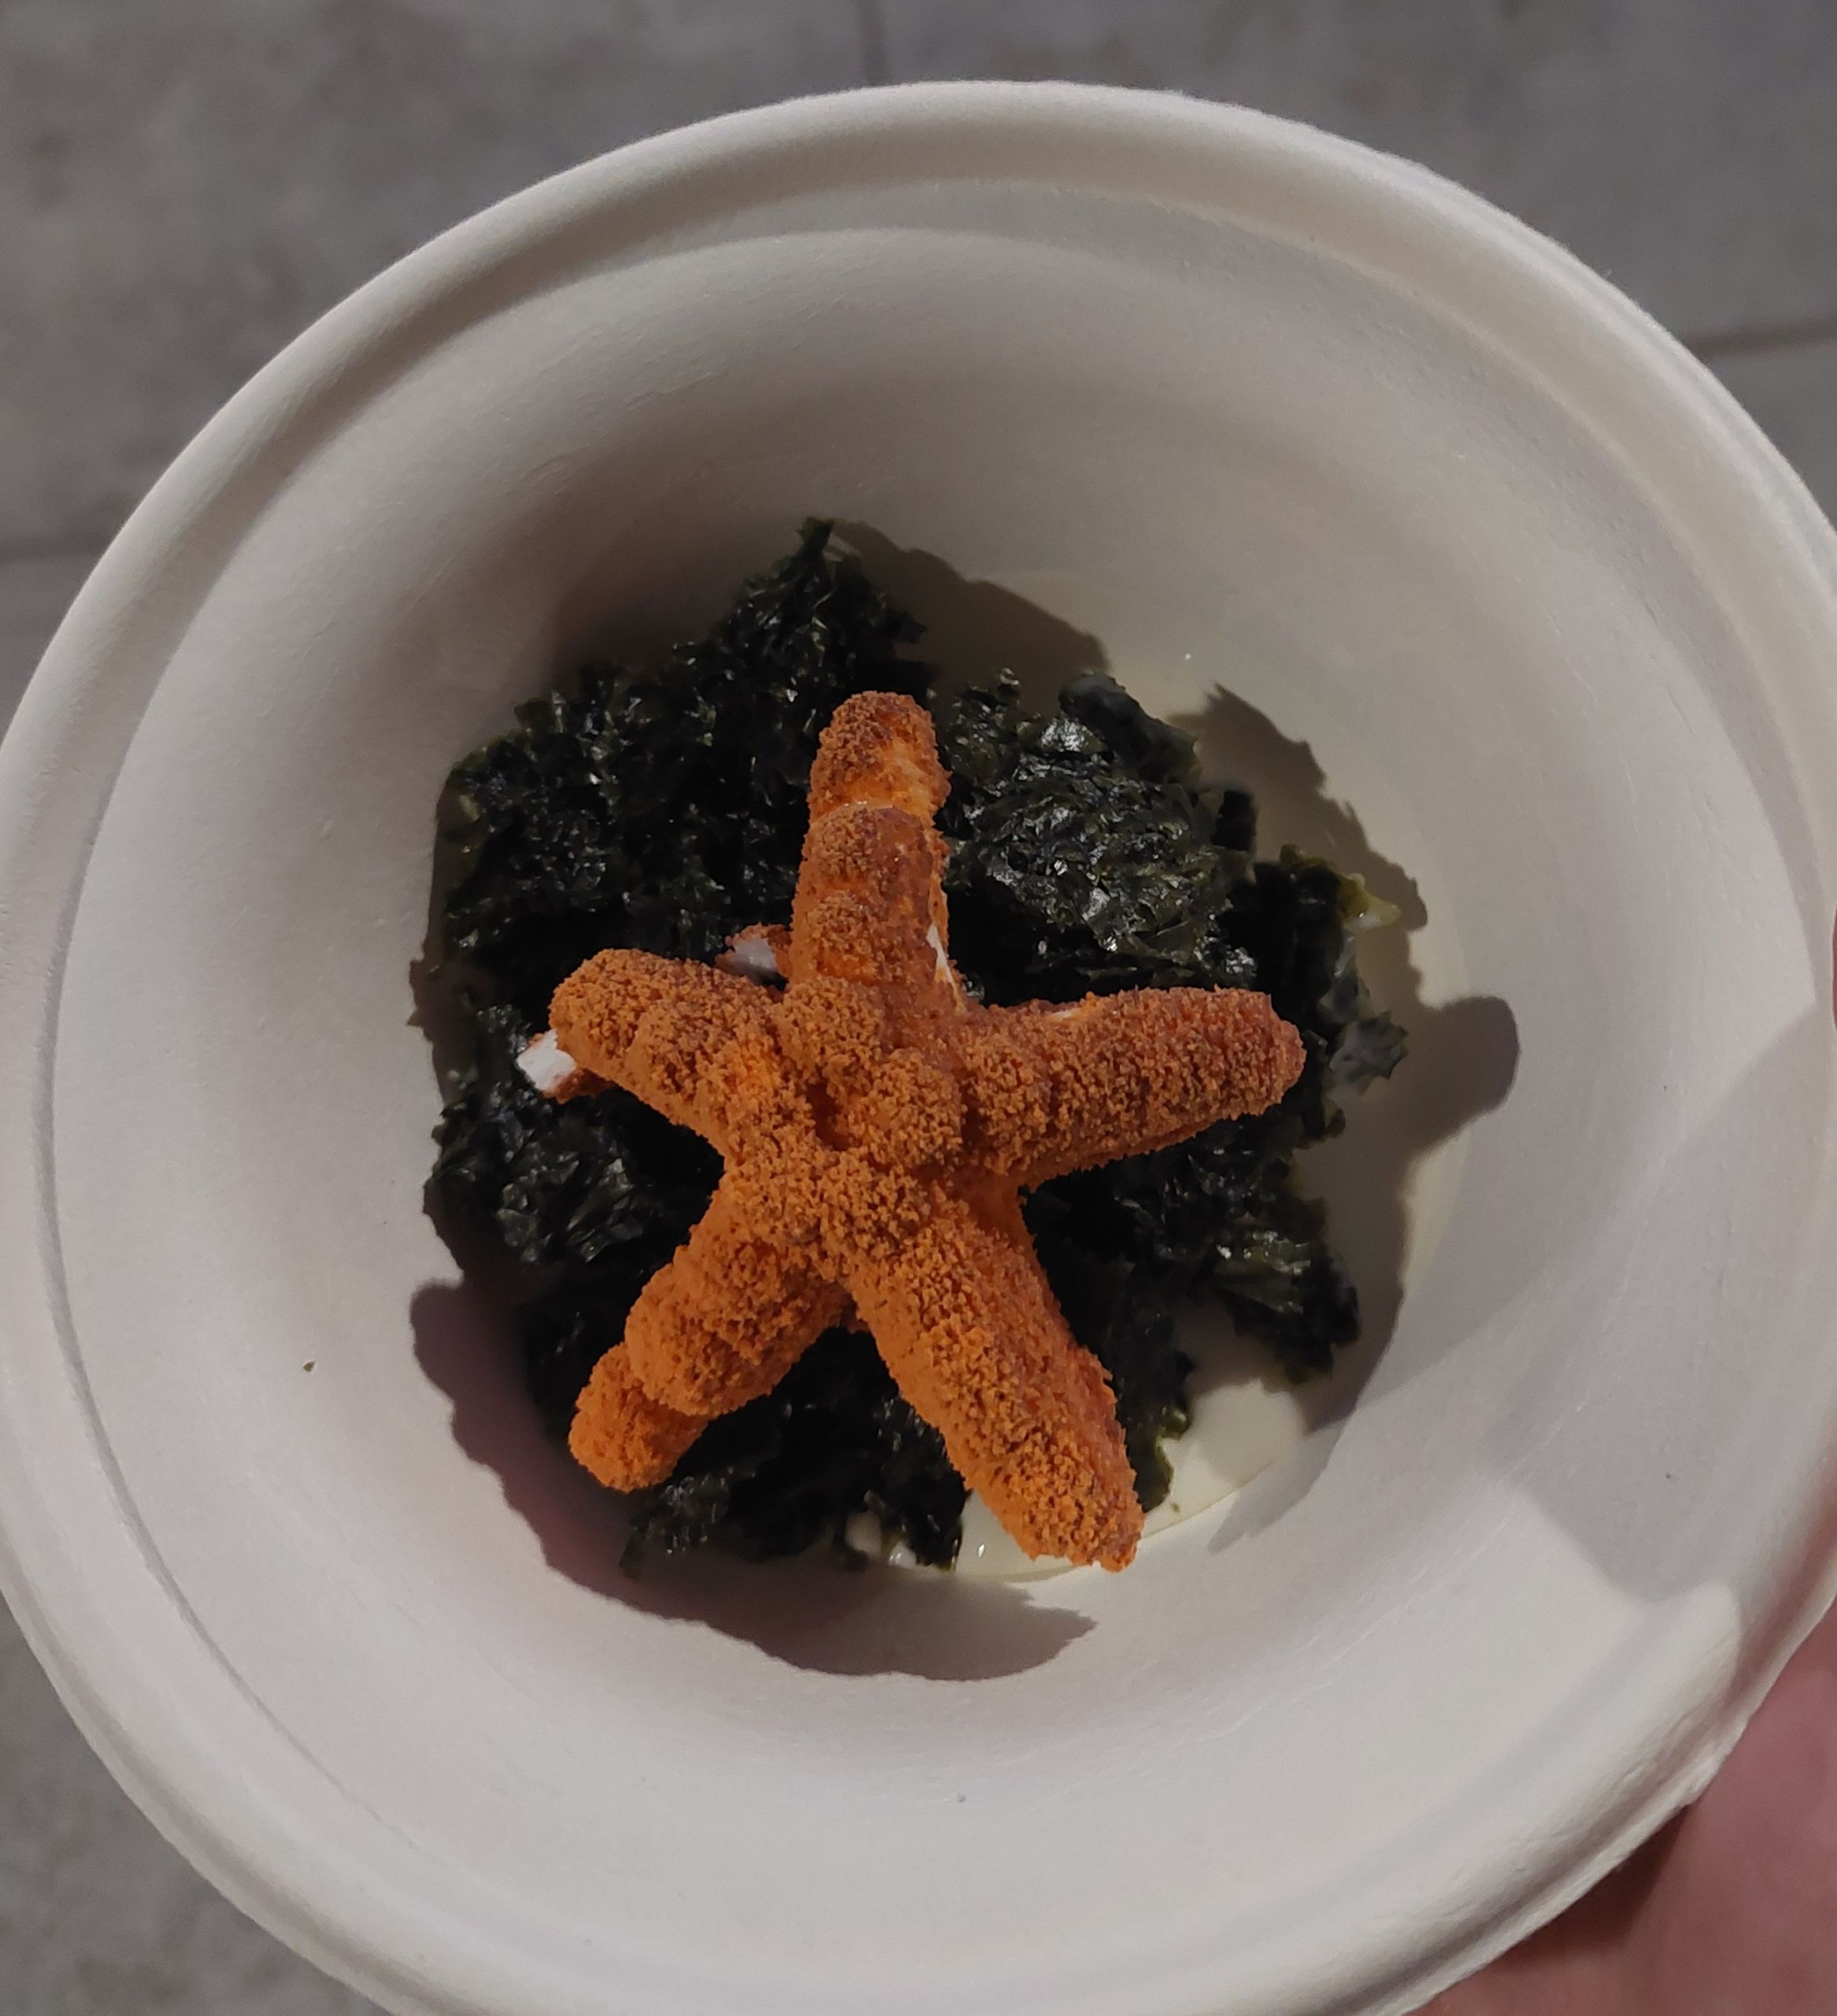 Ο καλοκαιρινός αυτός αστερίας είναι ένα νόστιμο παγωμένο επιδόρπιο από γιαούρτι, το οποίο μπορείτε να βρείτε στο pop up εστιατόριο Delta.